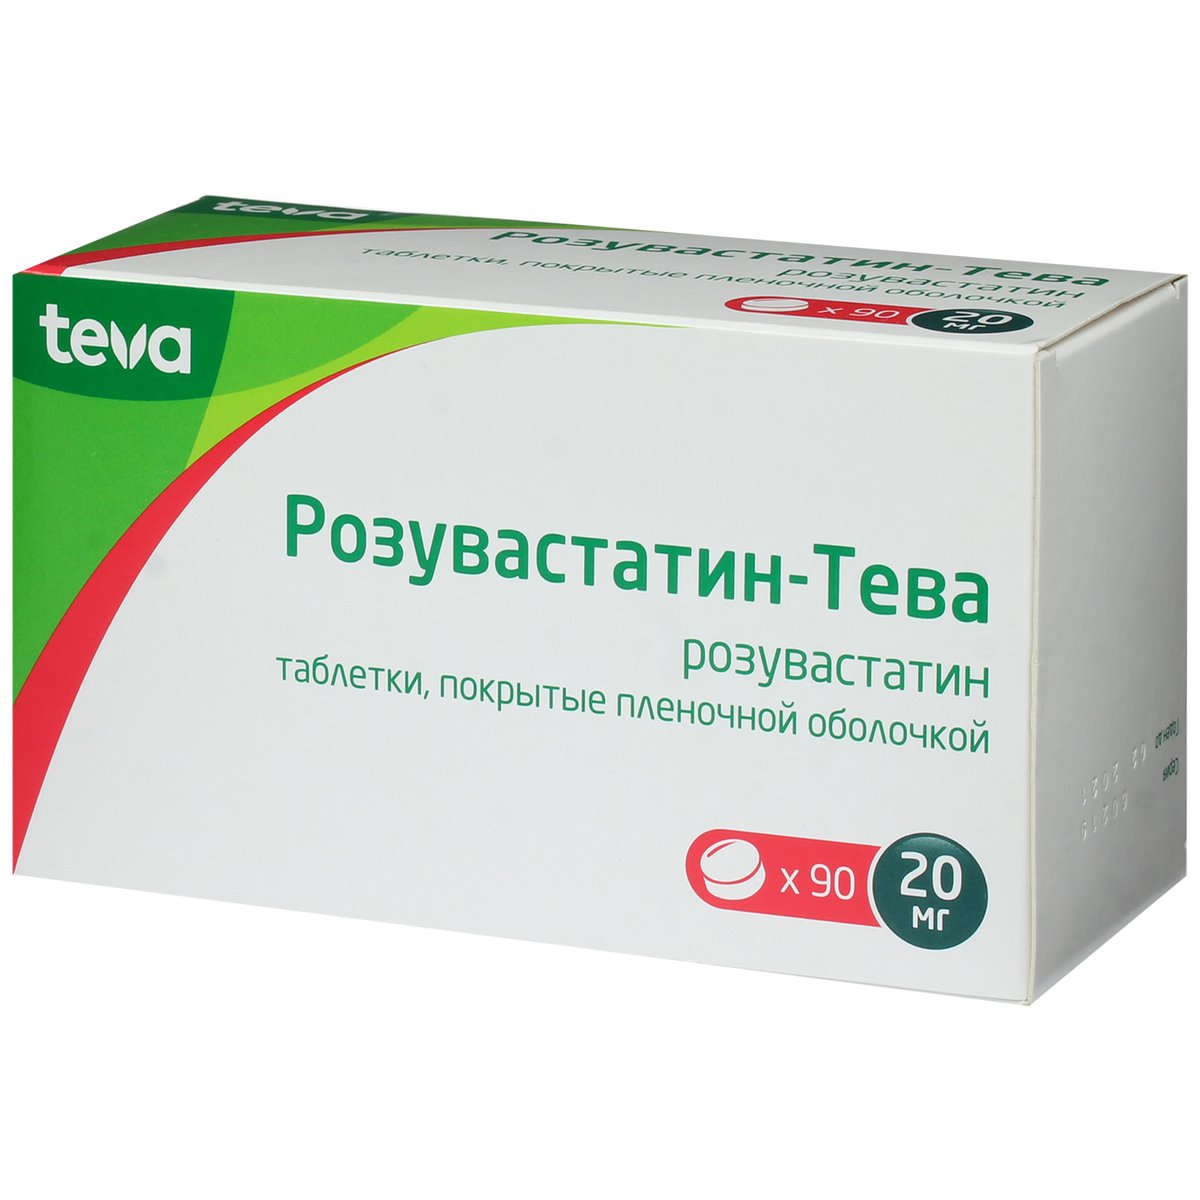 Розувастатин-Тева (таблетки, 90 шт, 20 мг, для приема внутрь) - цена .